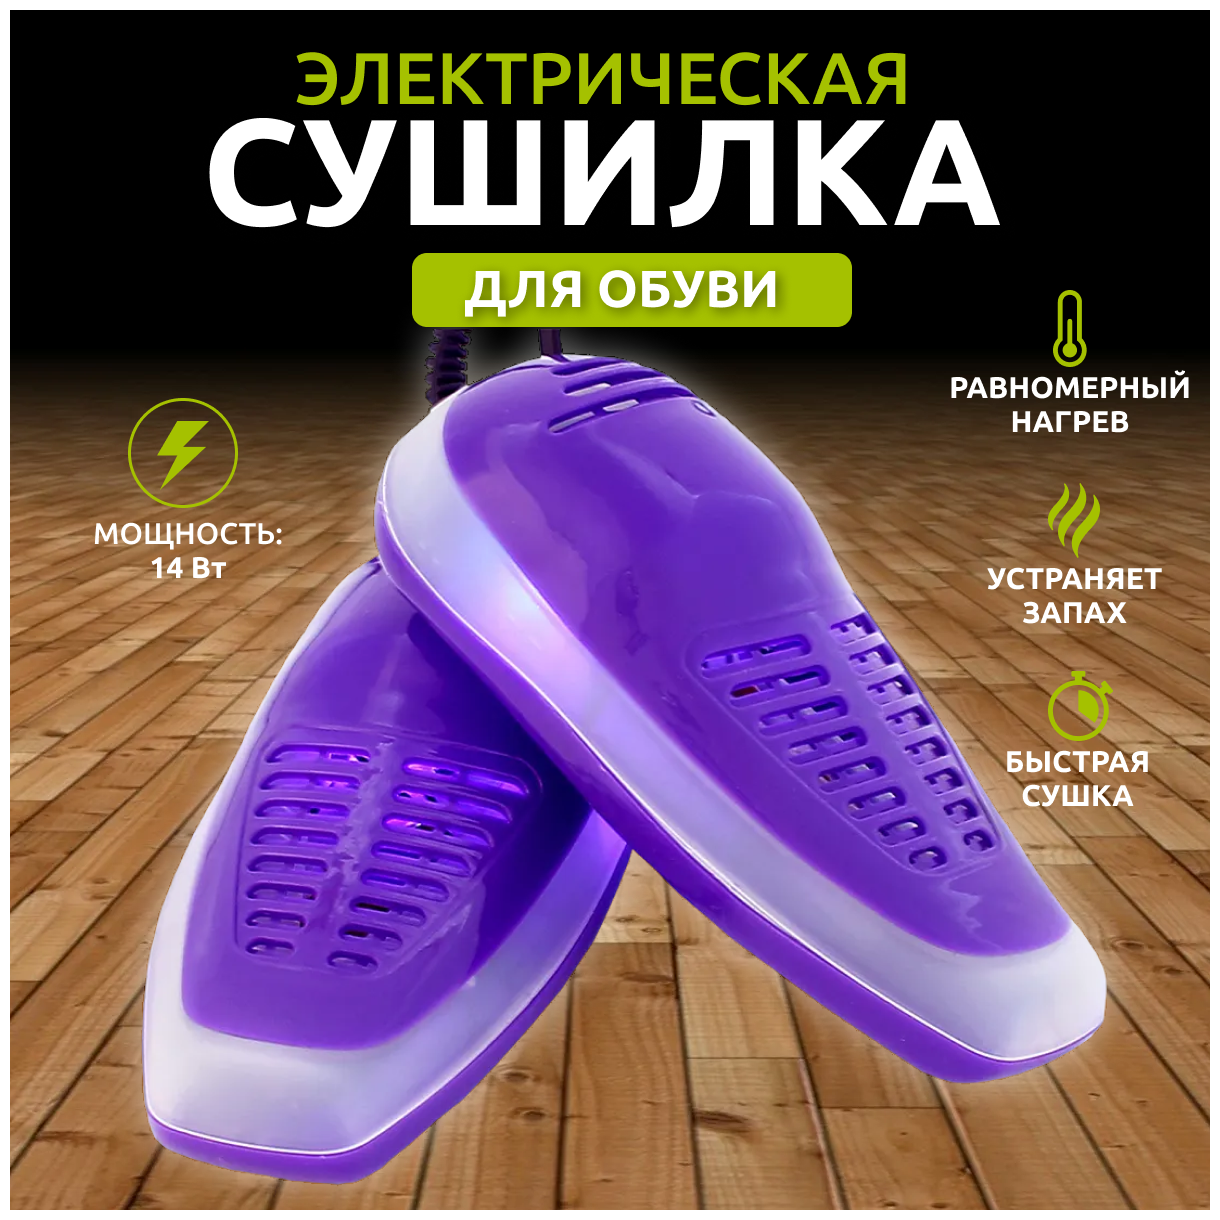 Сушилка для обуви / Противогрибковая электрическая сушилка для обуви